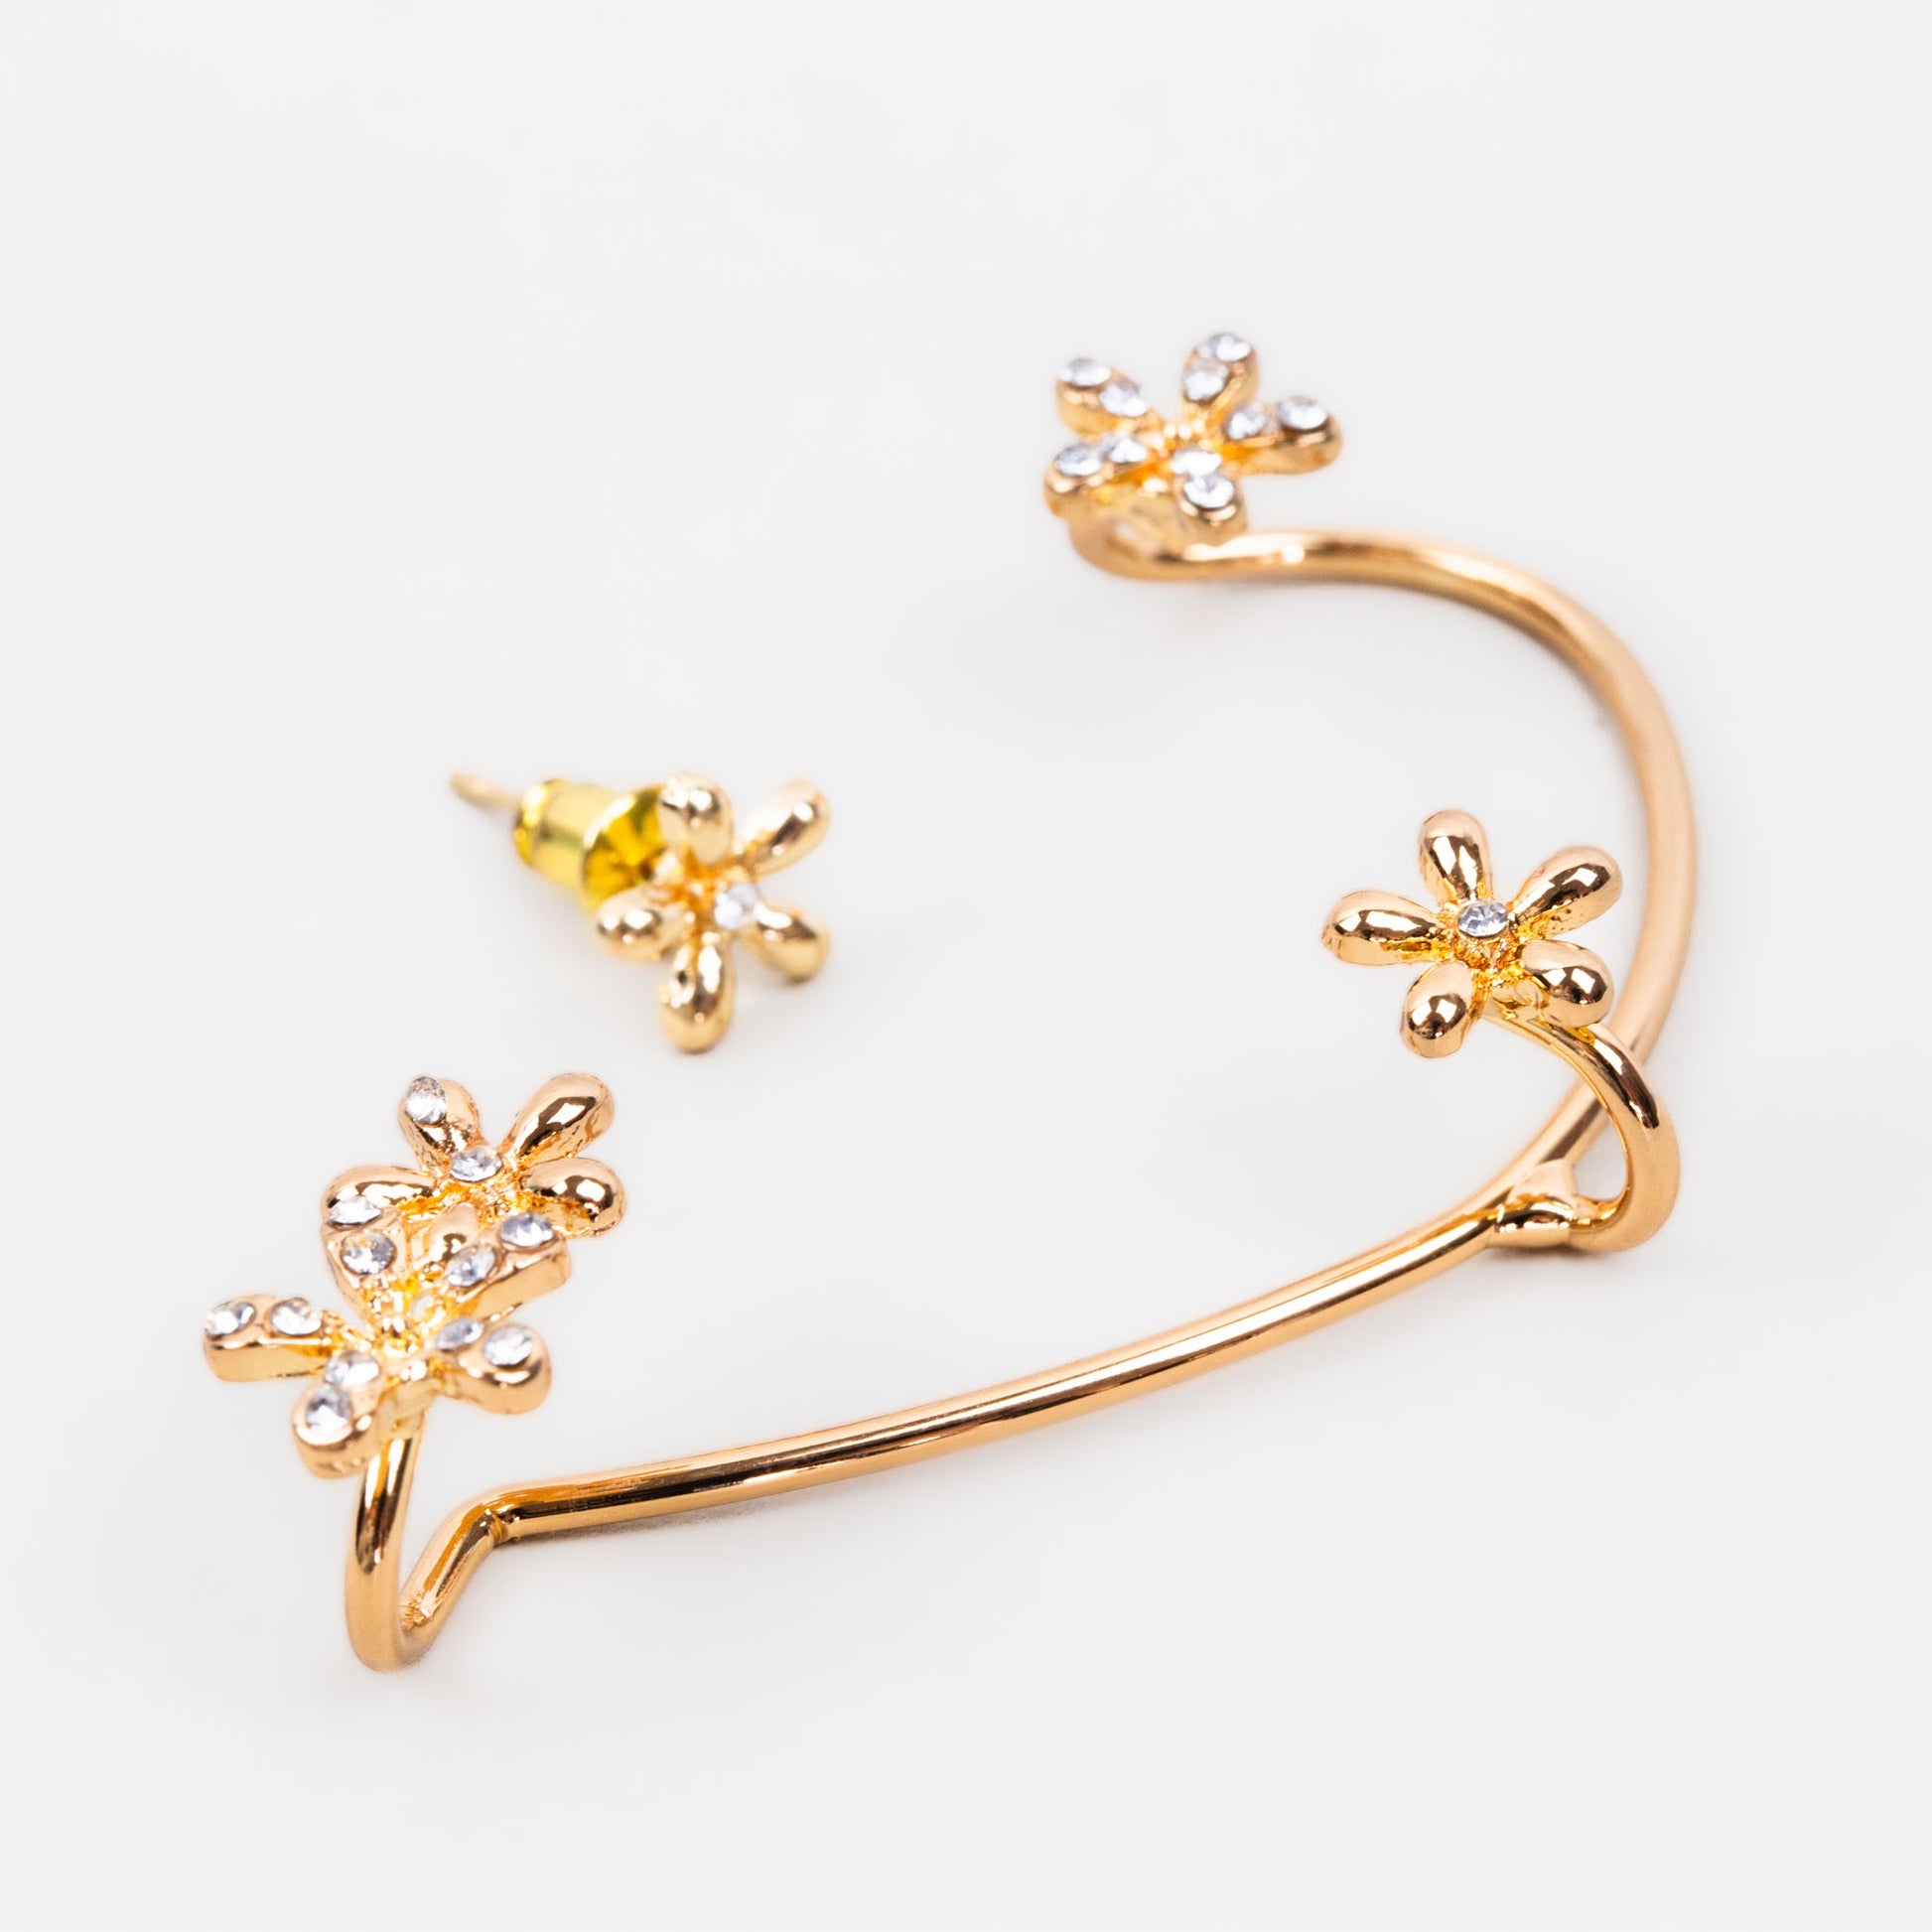 Cercel ear cuff cu ornamente în formă de floare, set 2 buc - Auriu delicat